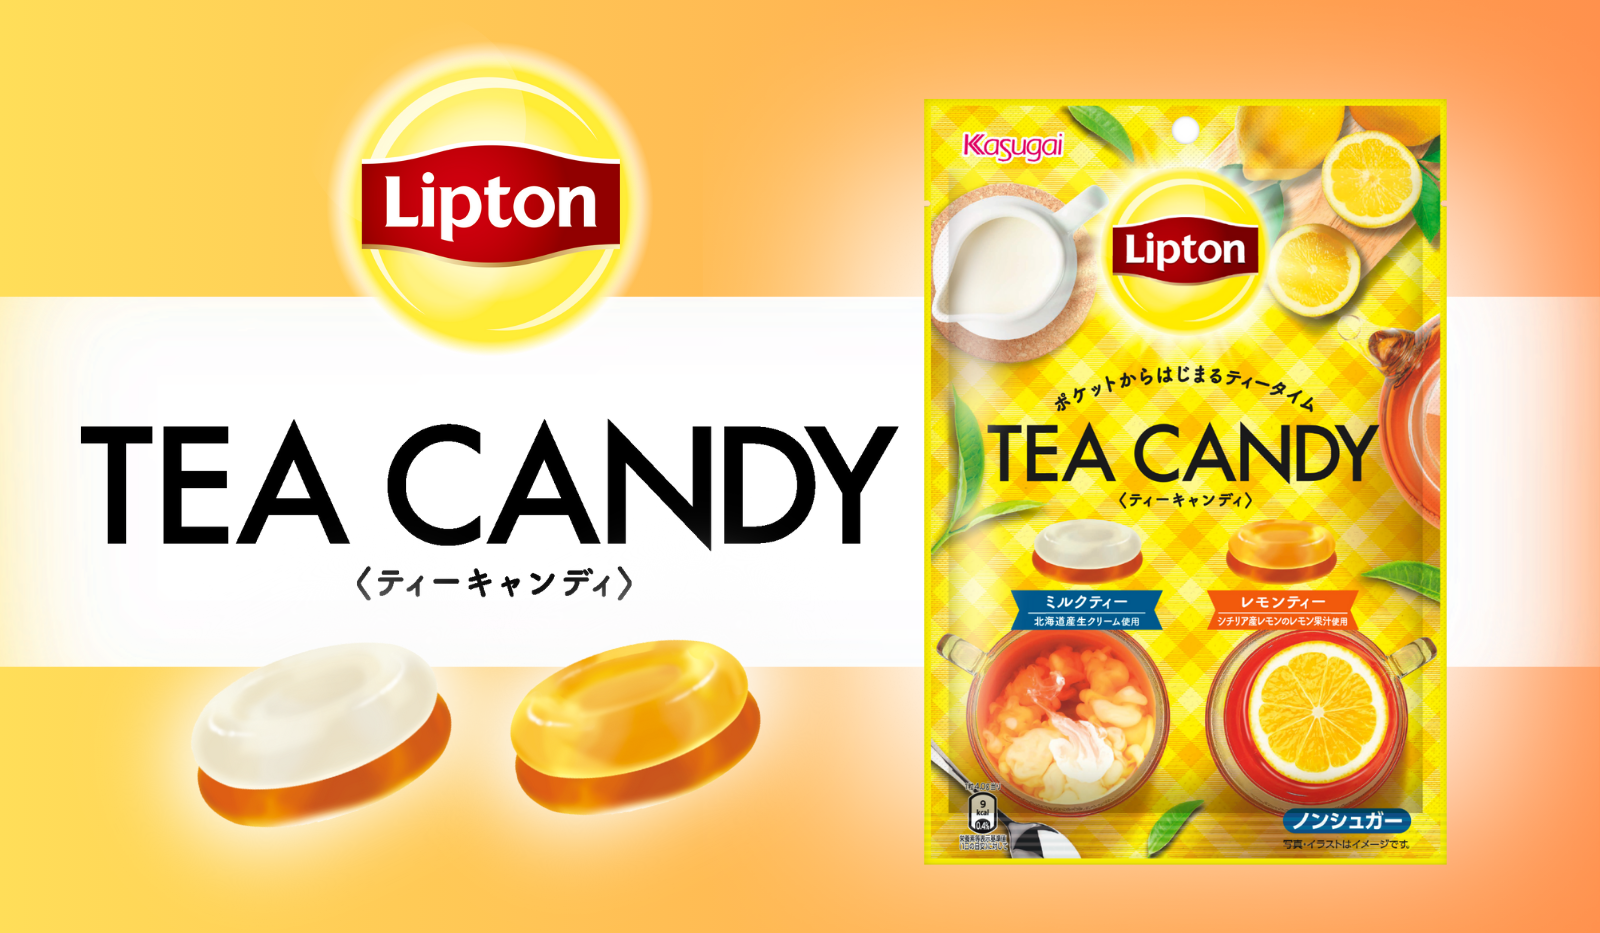 リプトン × Kasugai フルーツインティーキャンディ